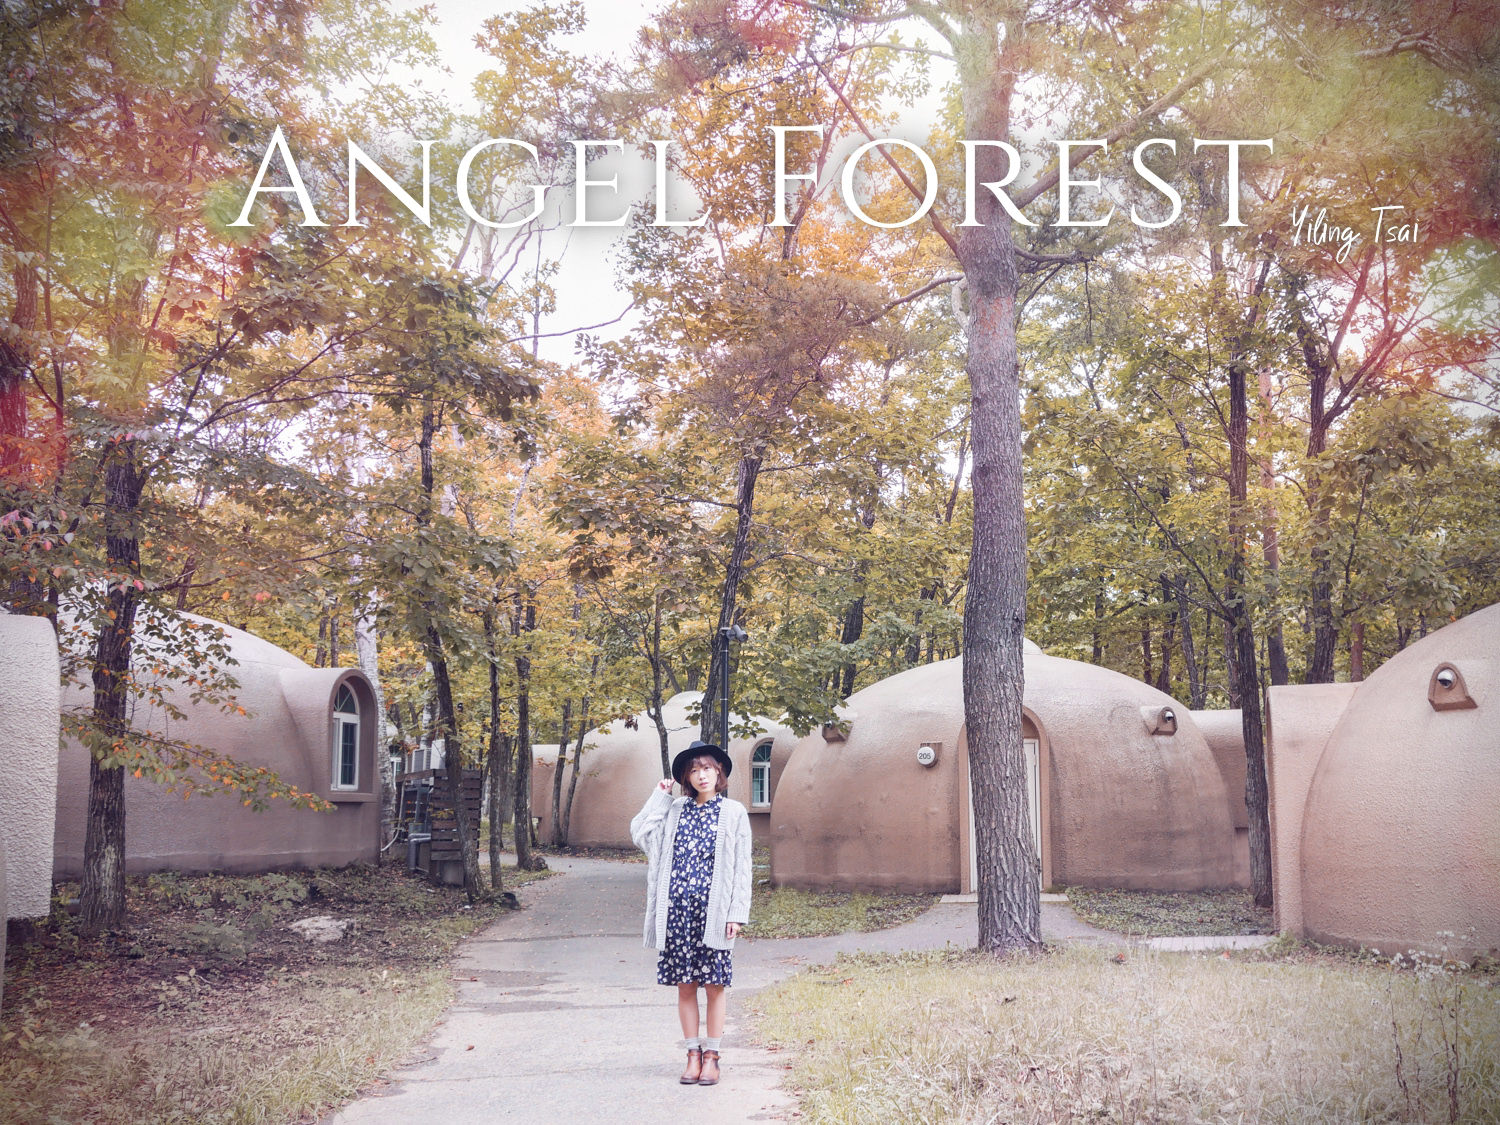 日本福島飯店 Angel Forest  天使之森那須白河 寵物友善住宿